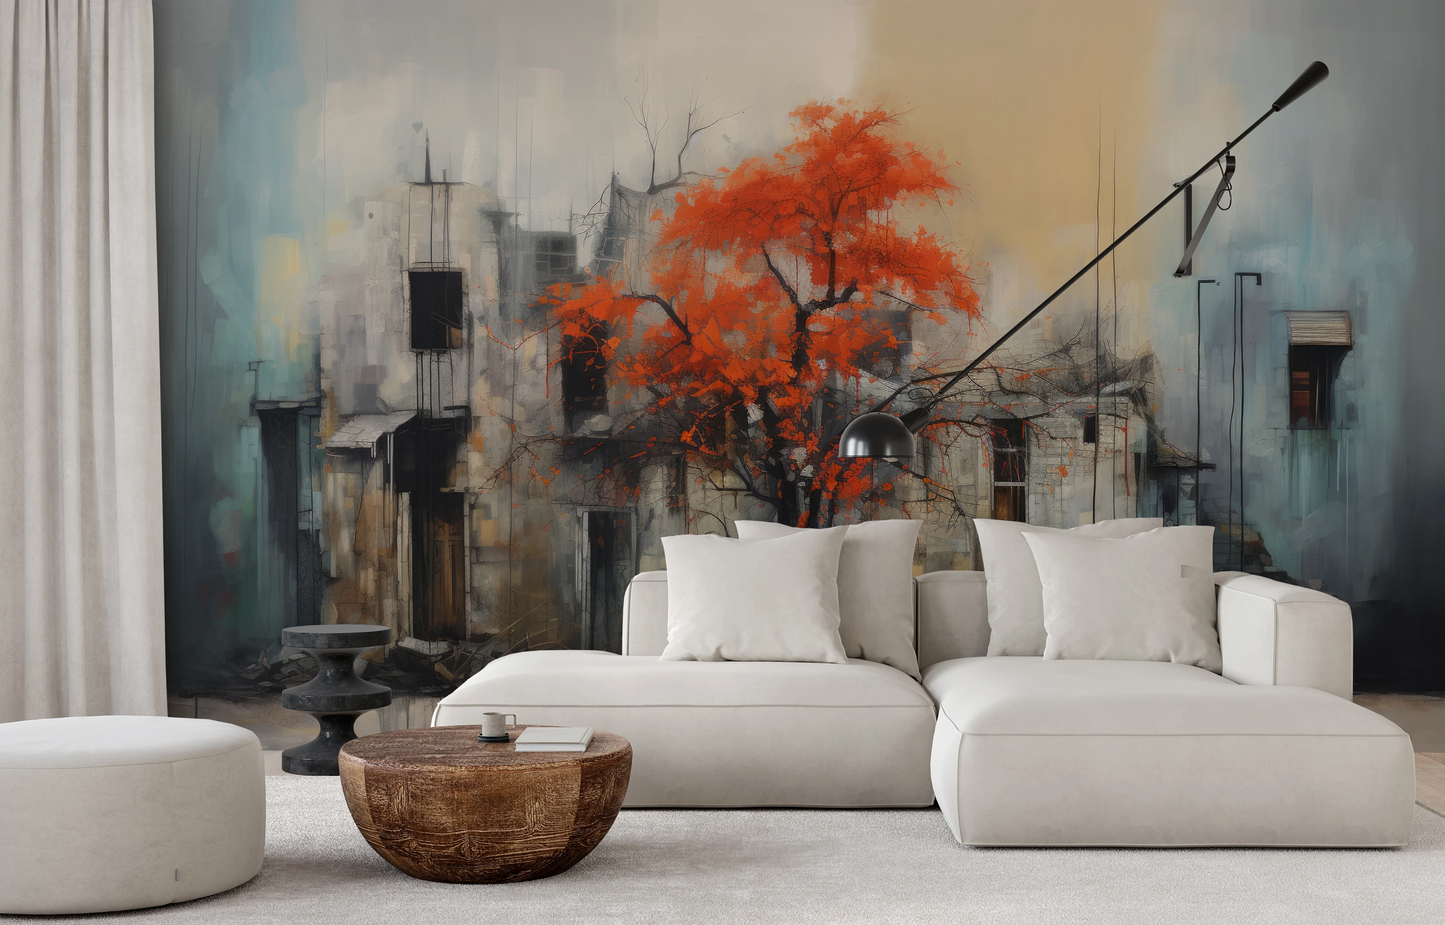 Wzór fototapety artystycznej o nazwie Autumn's Contrast pokazanej w aranżacji wnętrza.